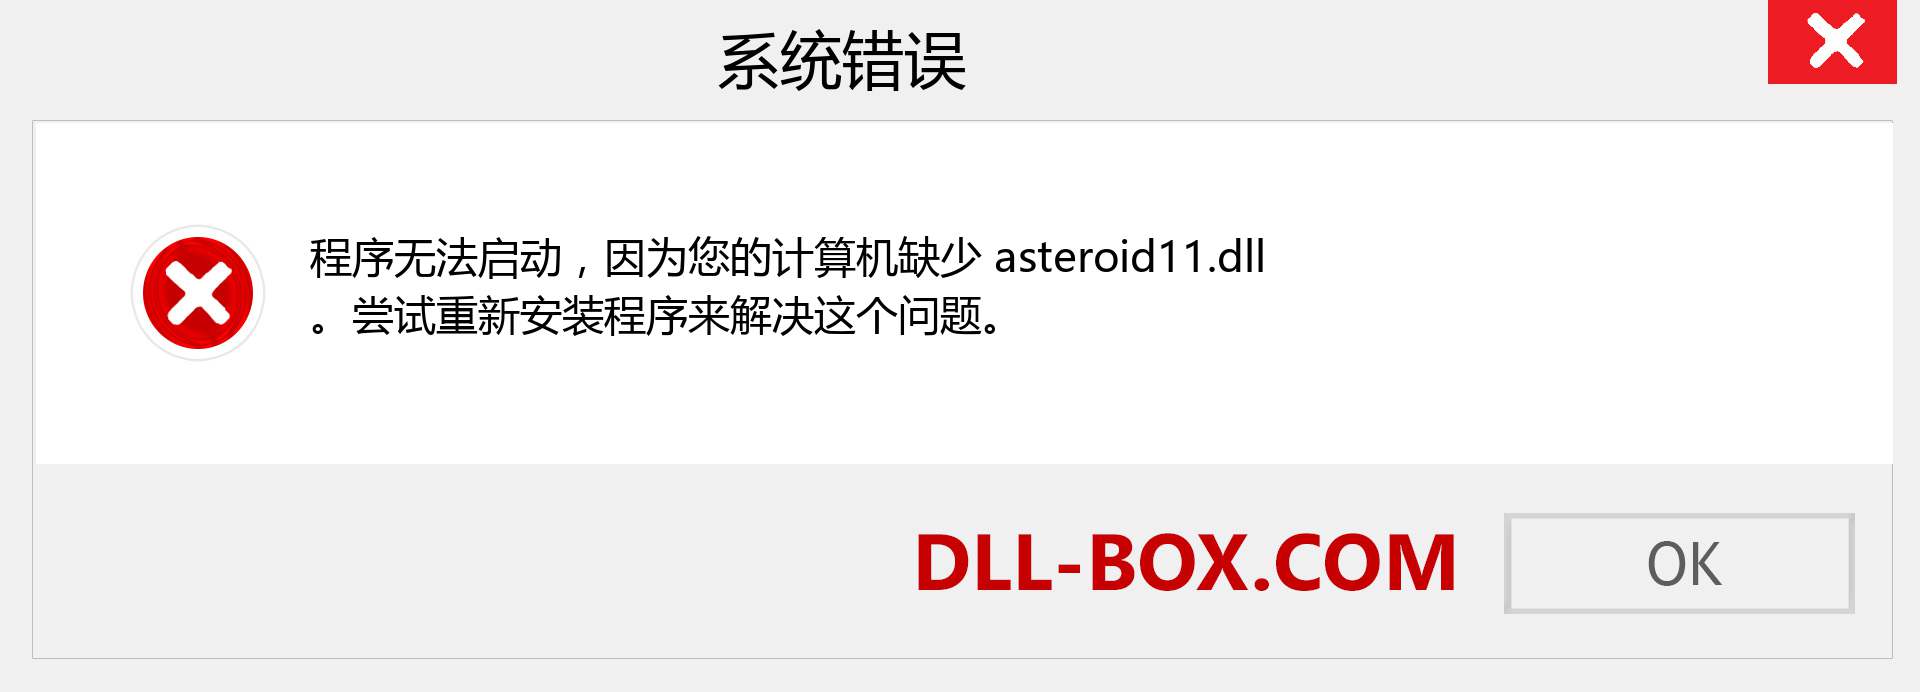 asteroid11.dll 文件丢失？。 适用于 Windows 7、8、10 的下载 - 修复 Windows、照片、图像上的 asteroid11 dll 丢失错误